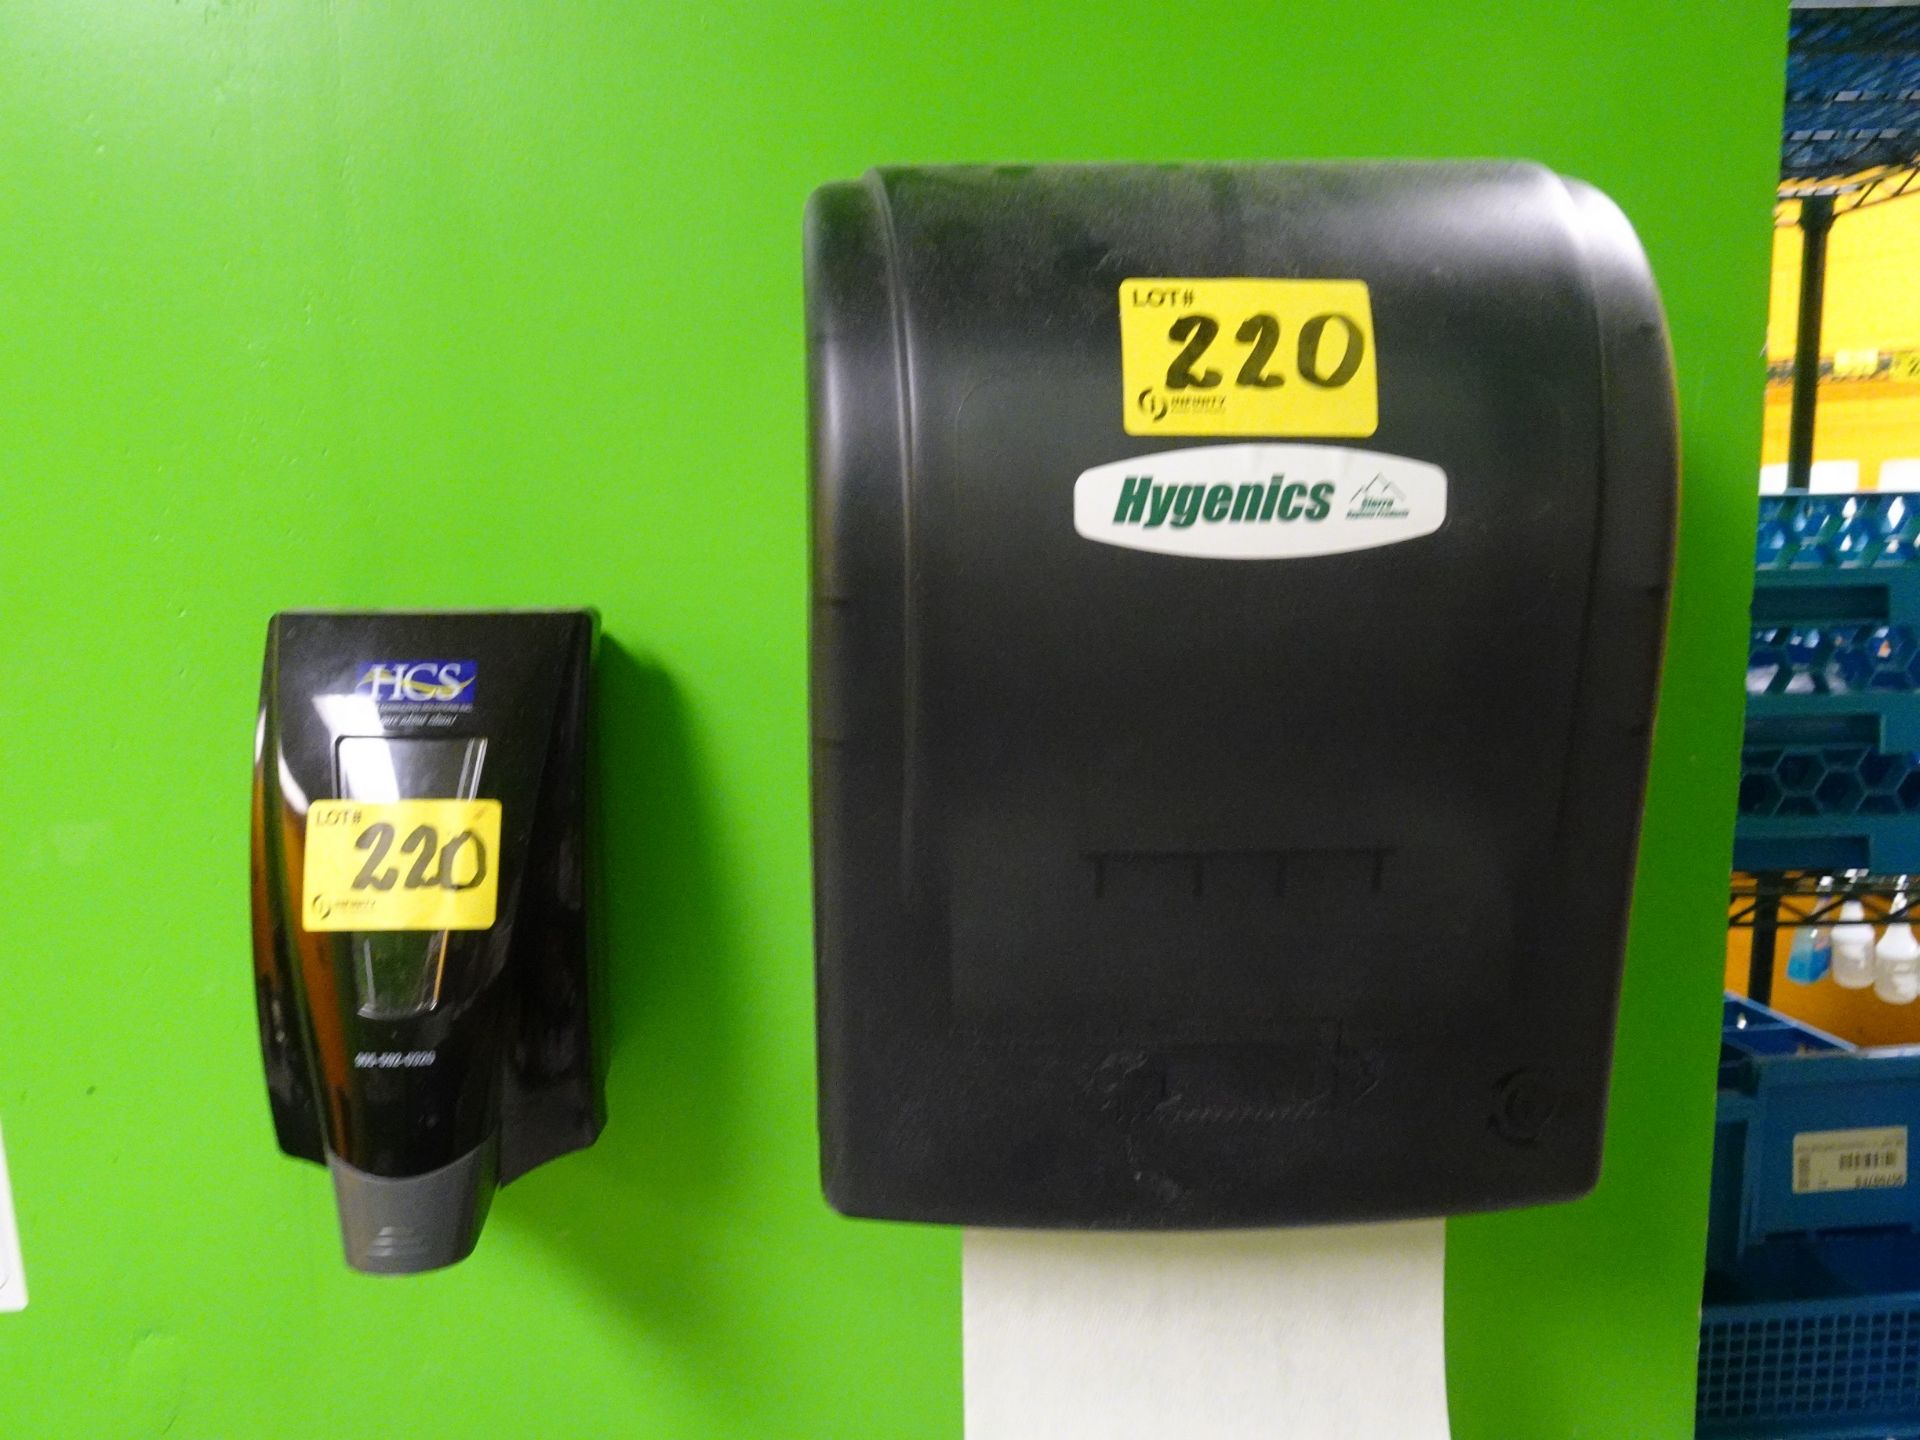 Hygenics paper towel dispenser w/ HCS soap dispenser